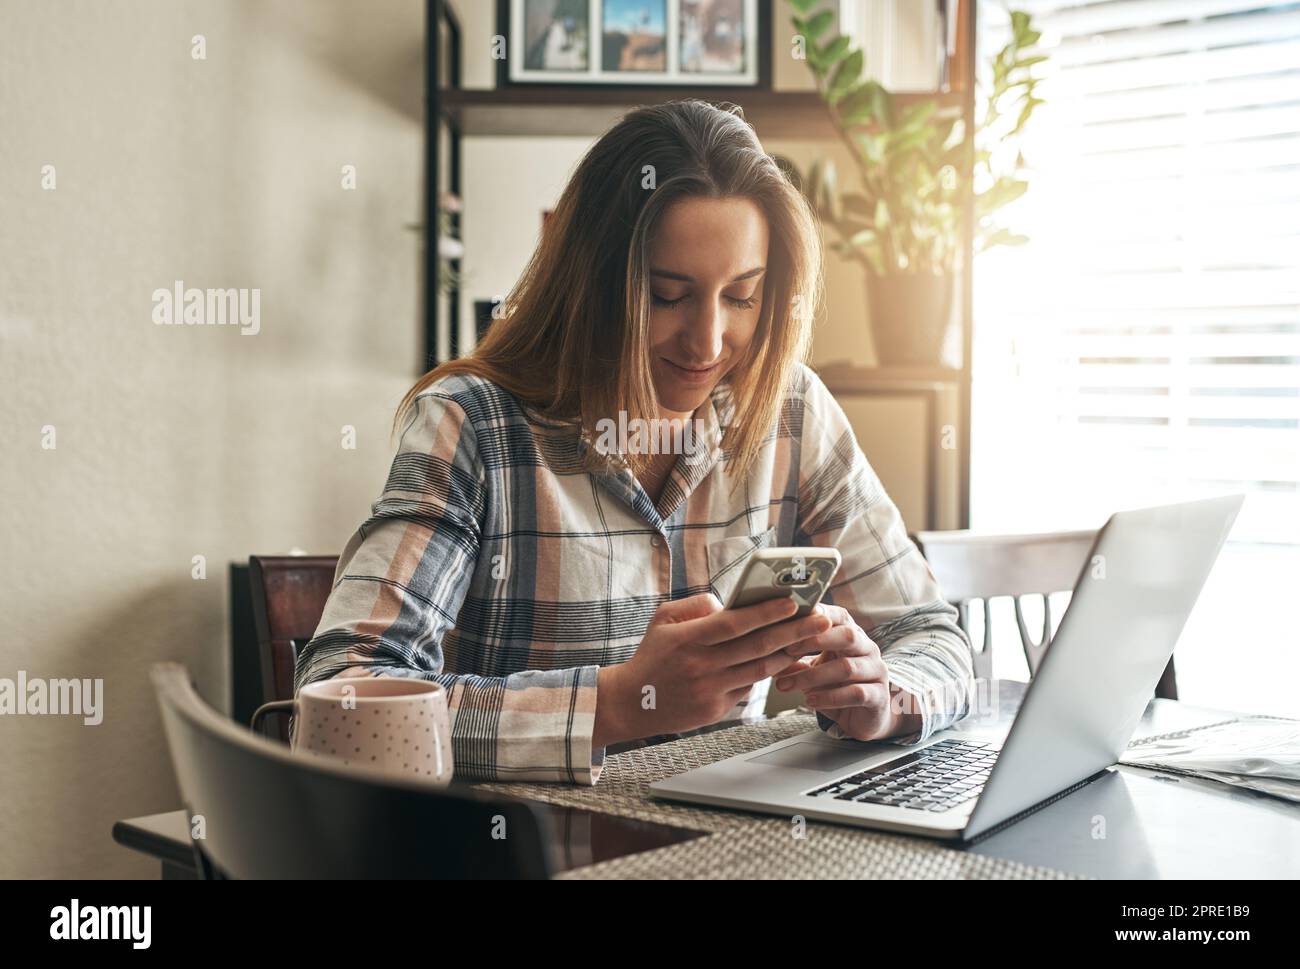 Le mattine sono quando controllo gli aggiornamenti. Una giovane donna che usa un portatile la mattina a casa. Foto Stock